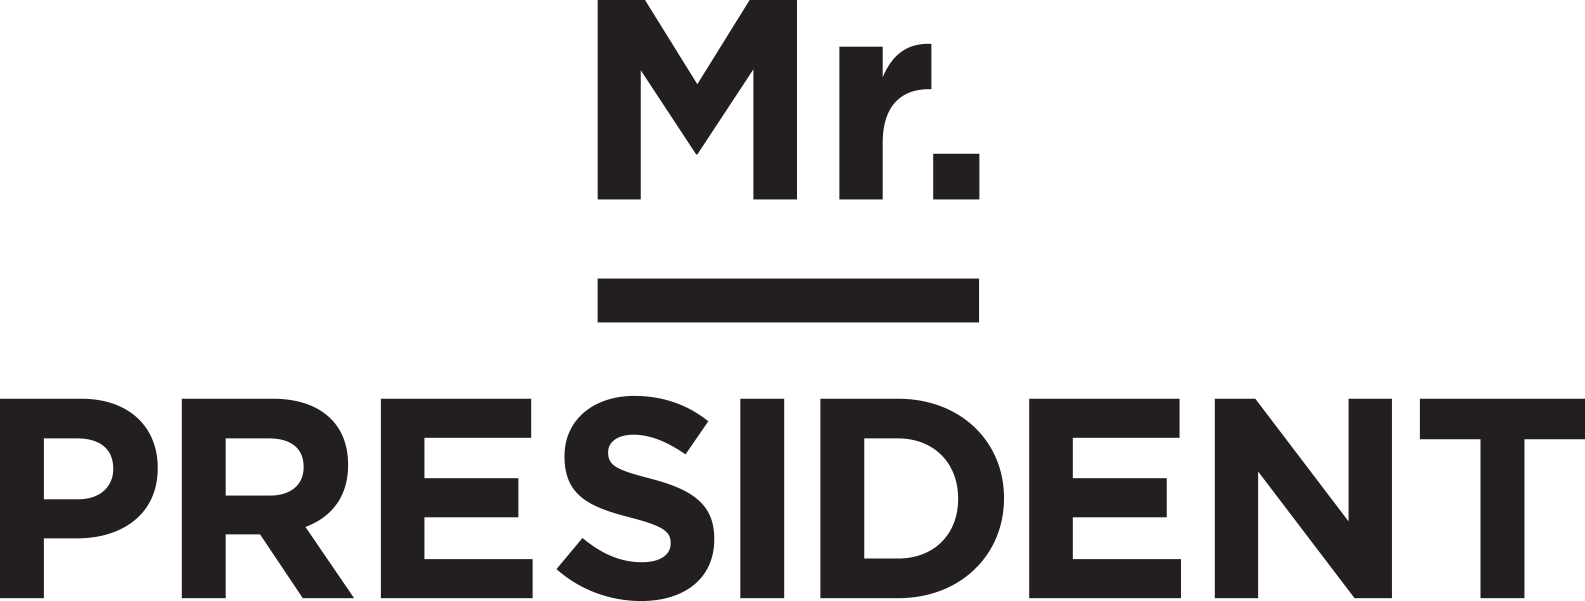 Mr.President logo